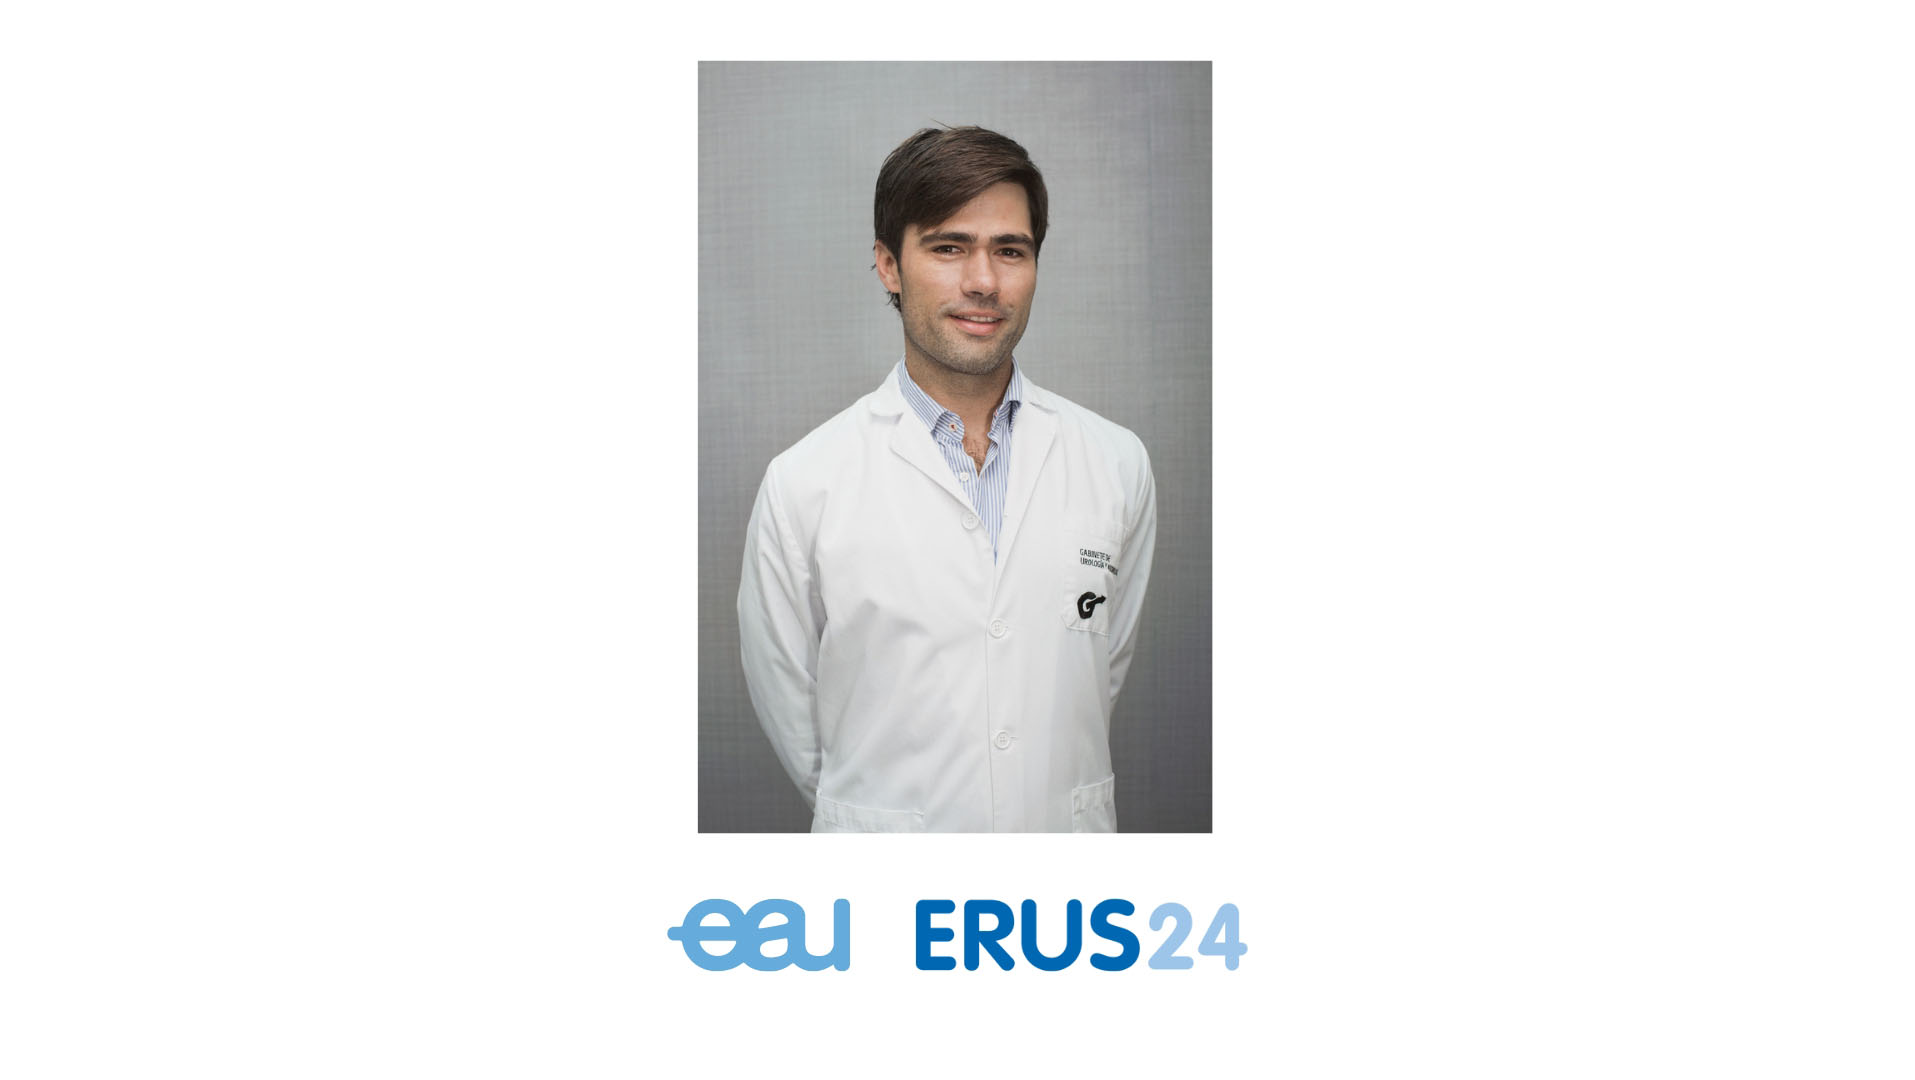 Il Dr. Pablo Juárez del Dago, direttore del nostro centro, è stato nominato ERUS Technology Officer dell'Associazione Europea di Urologia.